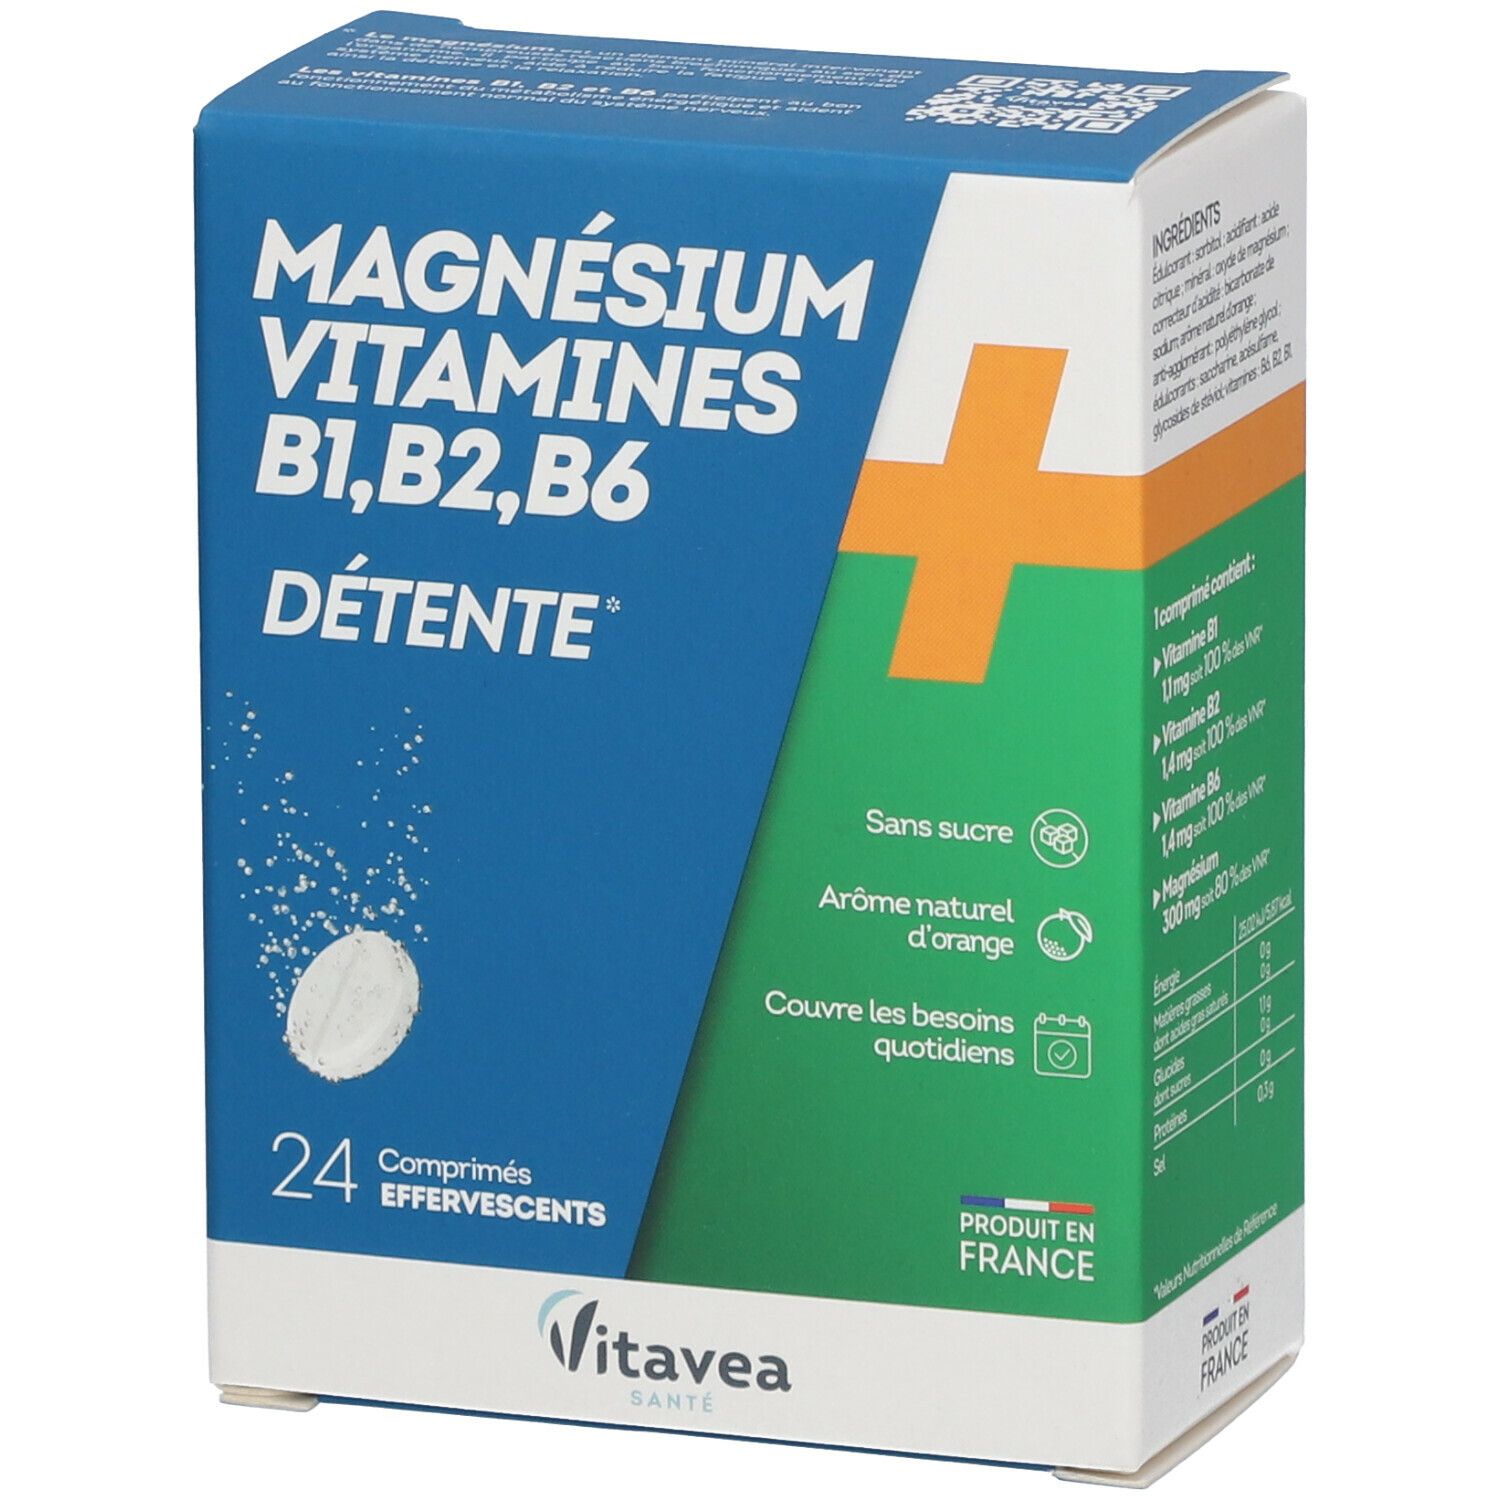 Nutrisanté Magnésium + Vitamines B1 B2 B6